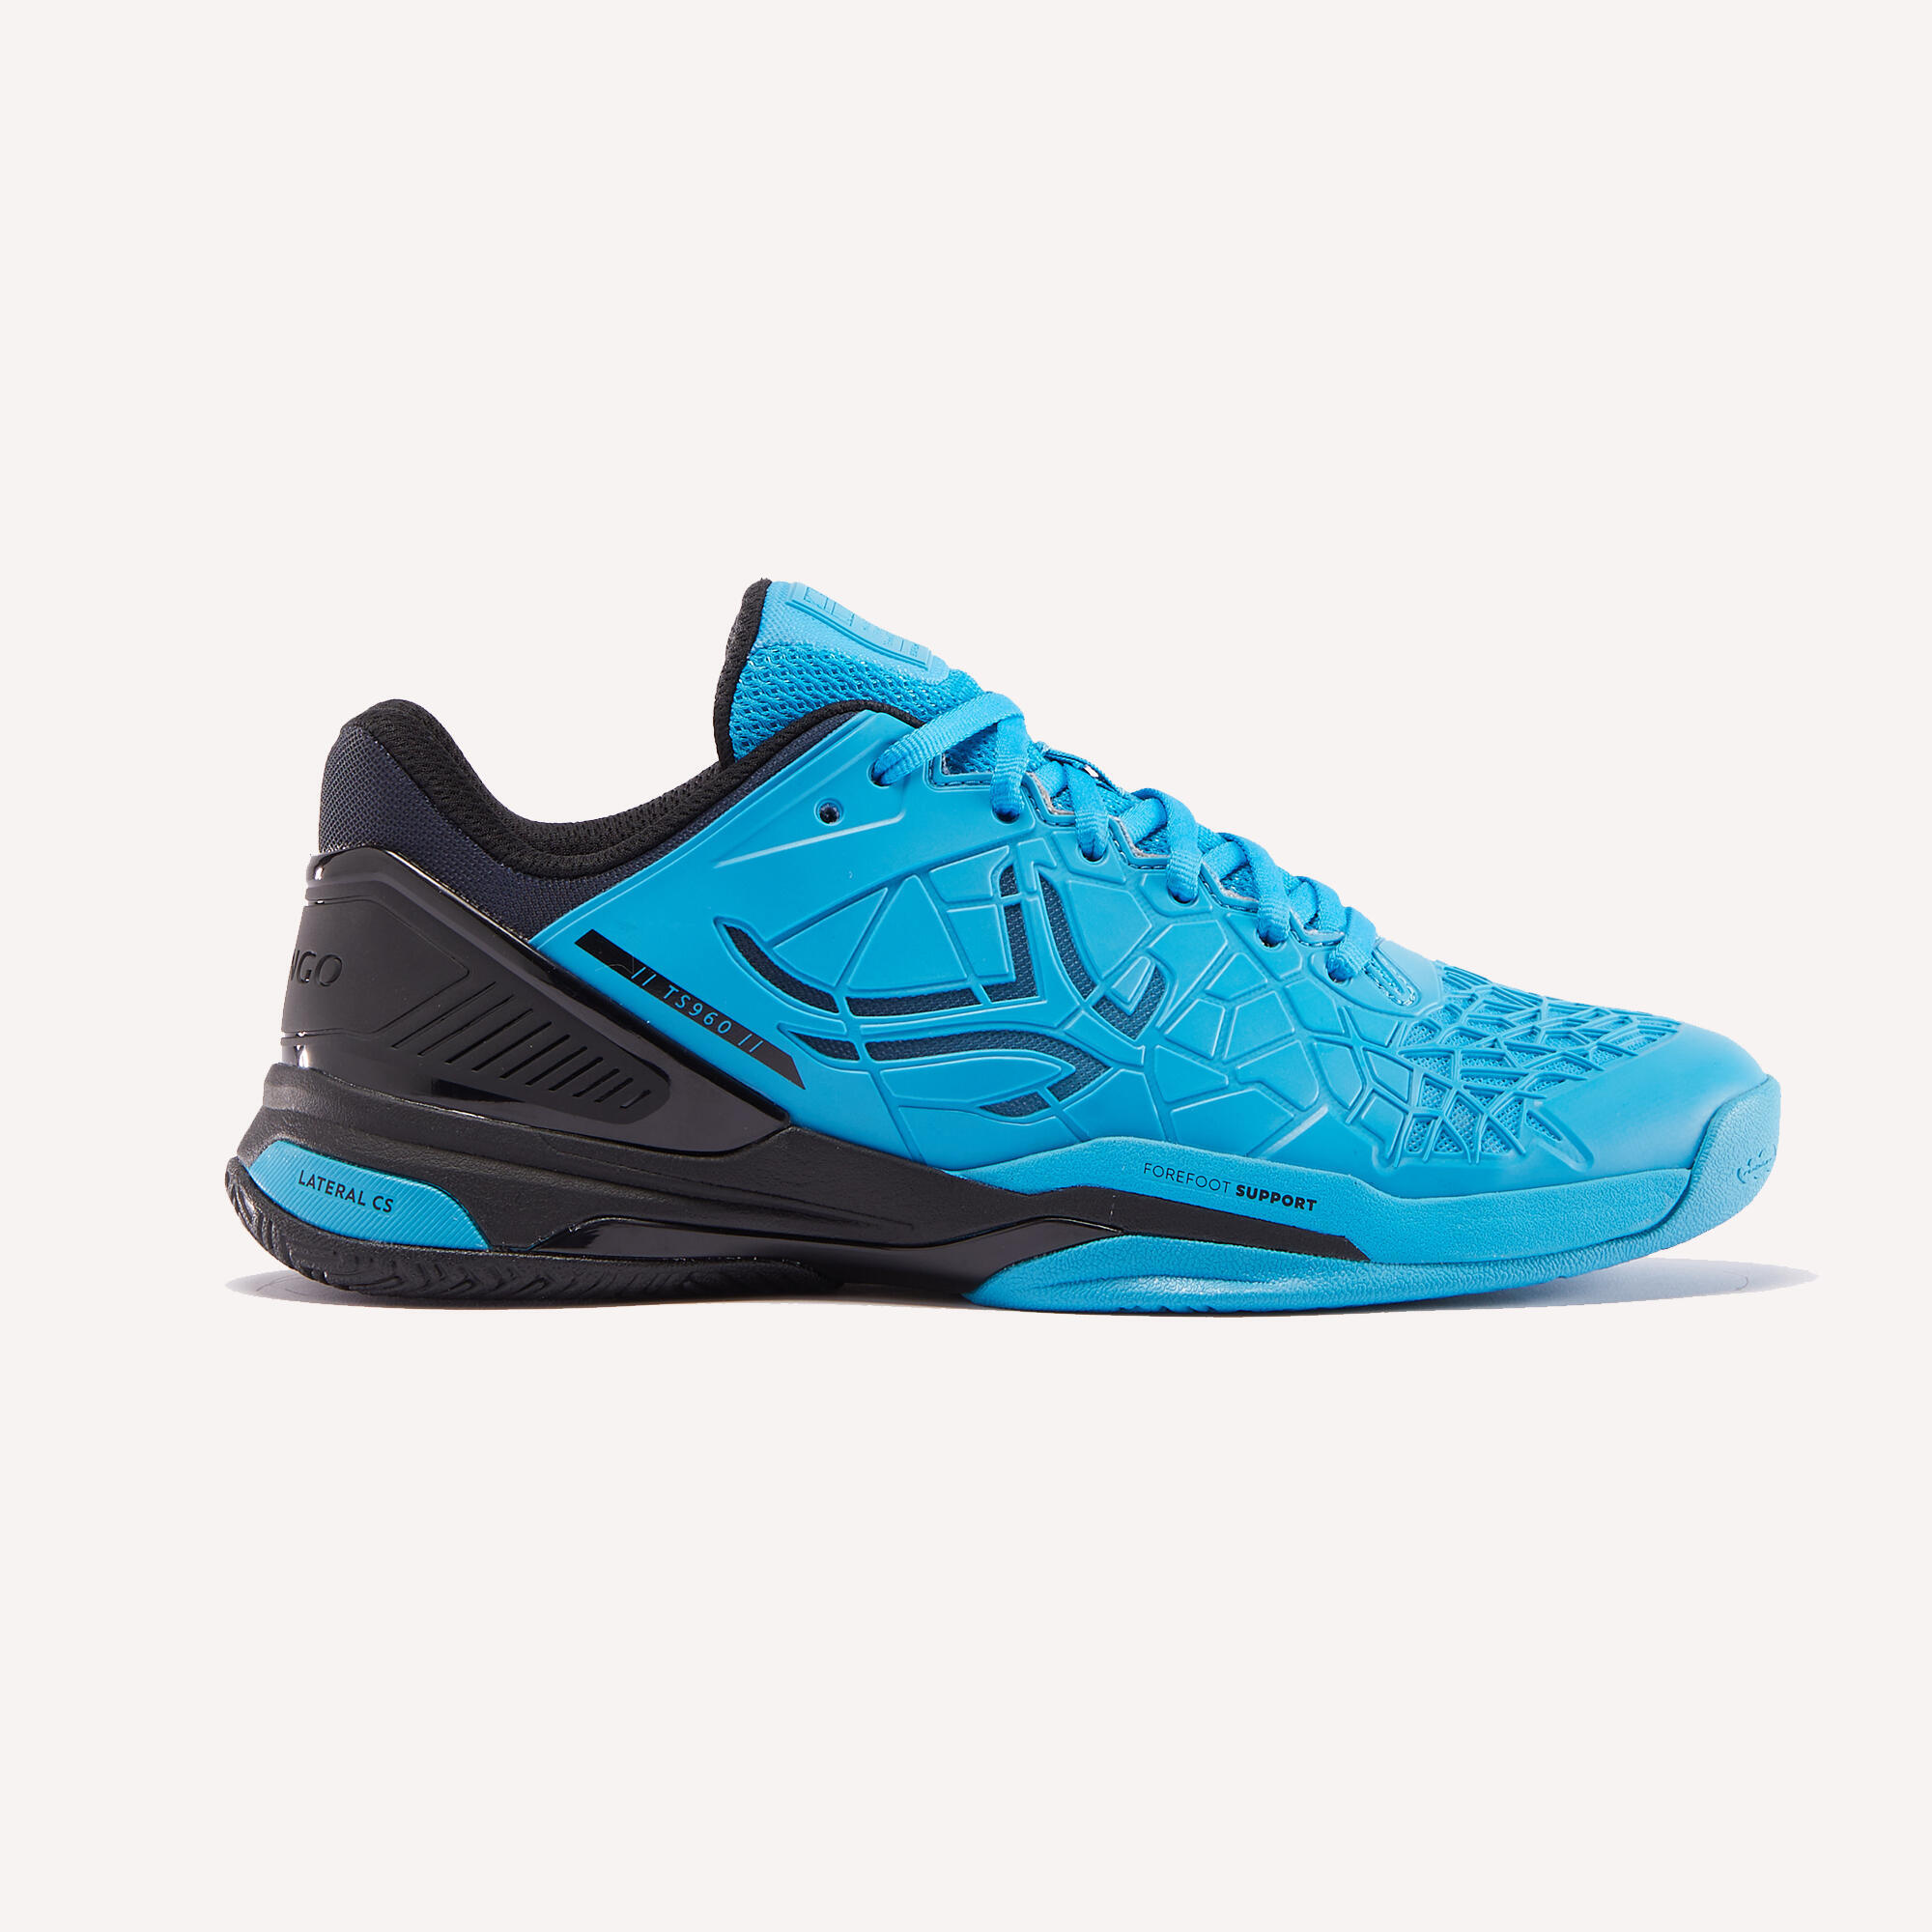 ARTENGO Men's Multicourt Tennis Shoes Strong Pro - Blue/Black